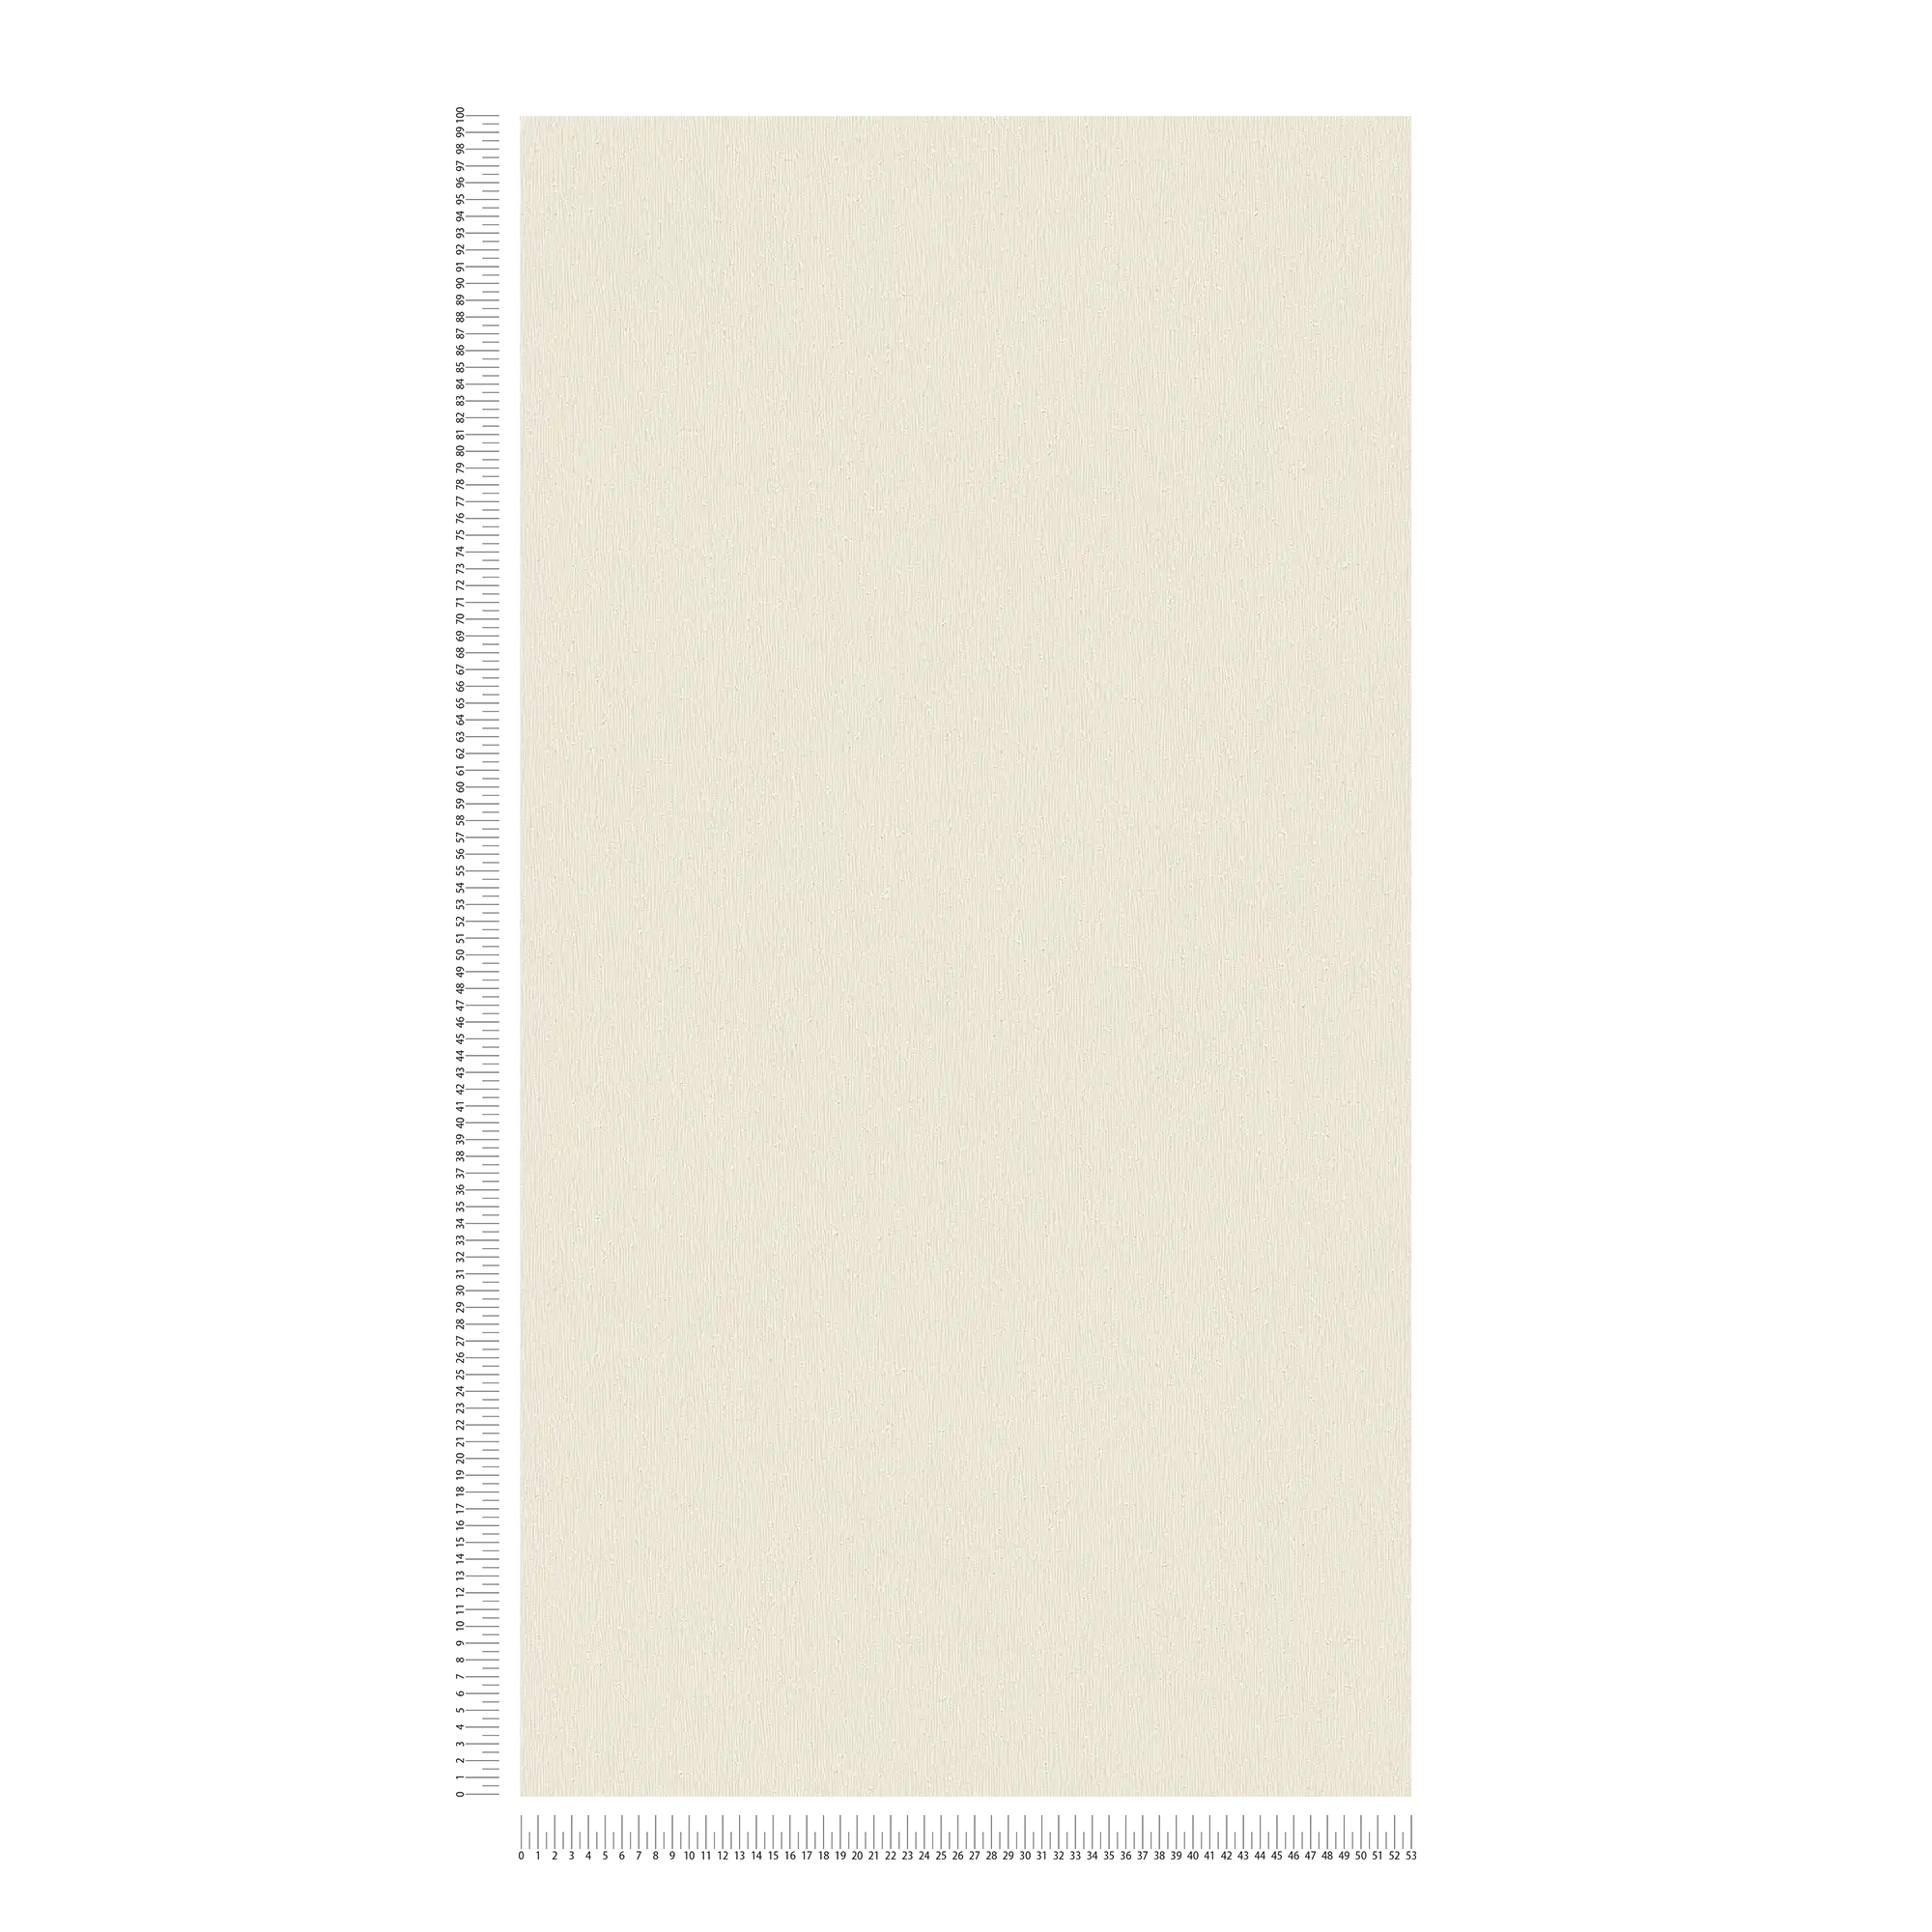             Carta da parati in tessuto non tessuto crema con struttura monocromatica - crema, bianco
        